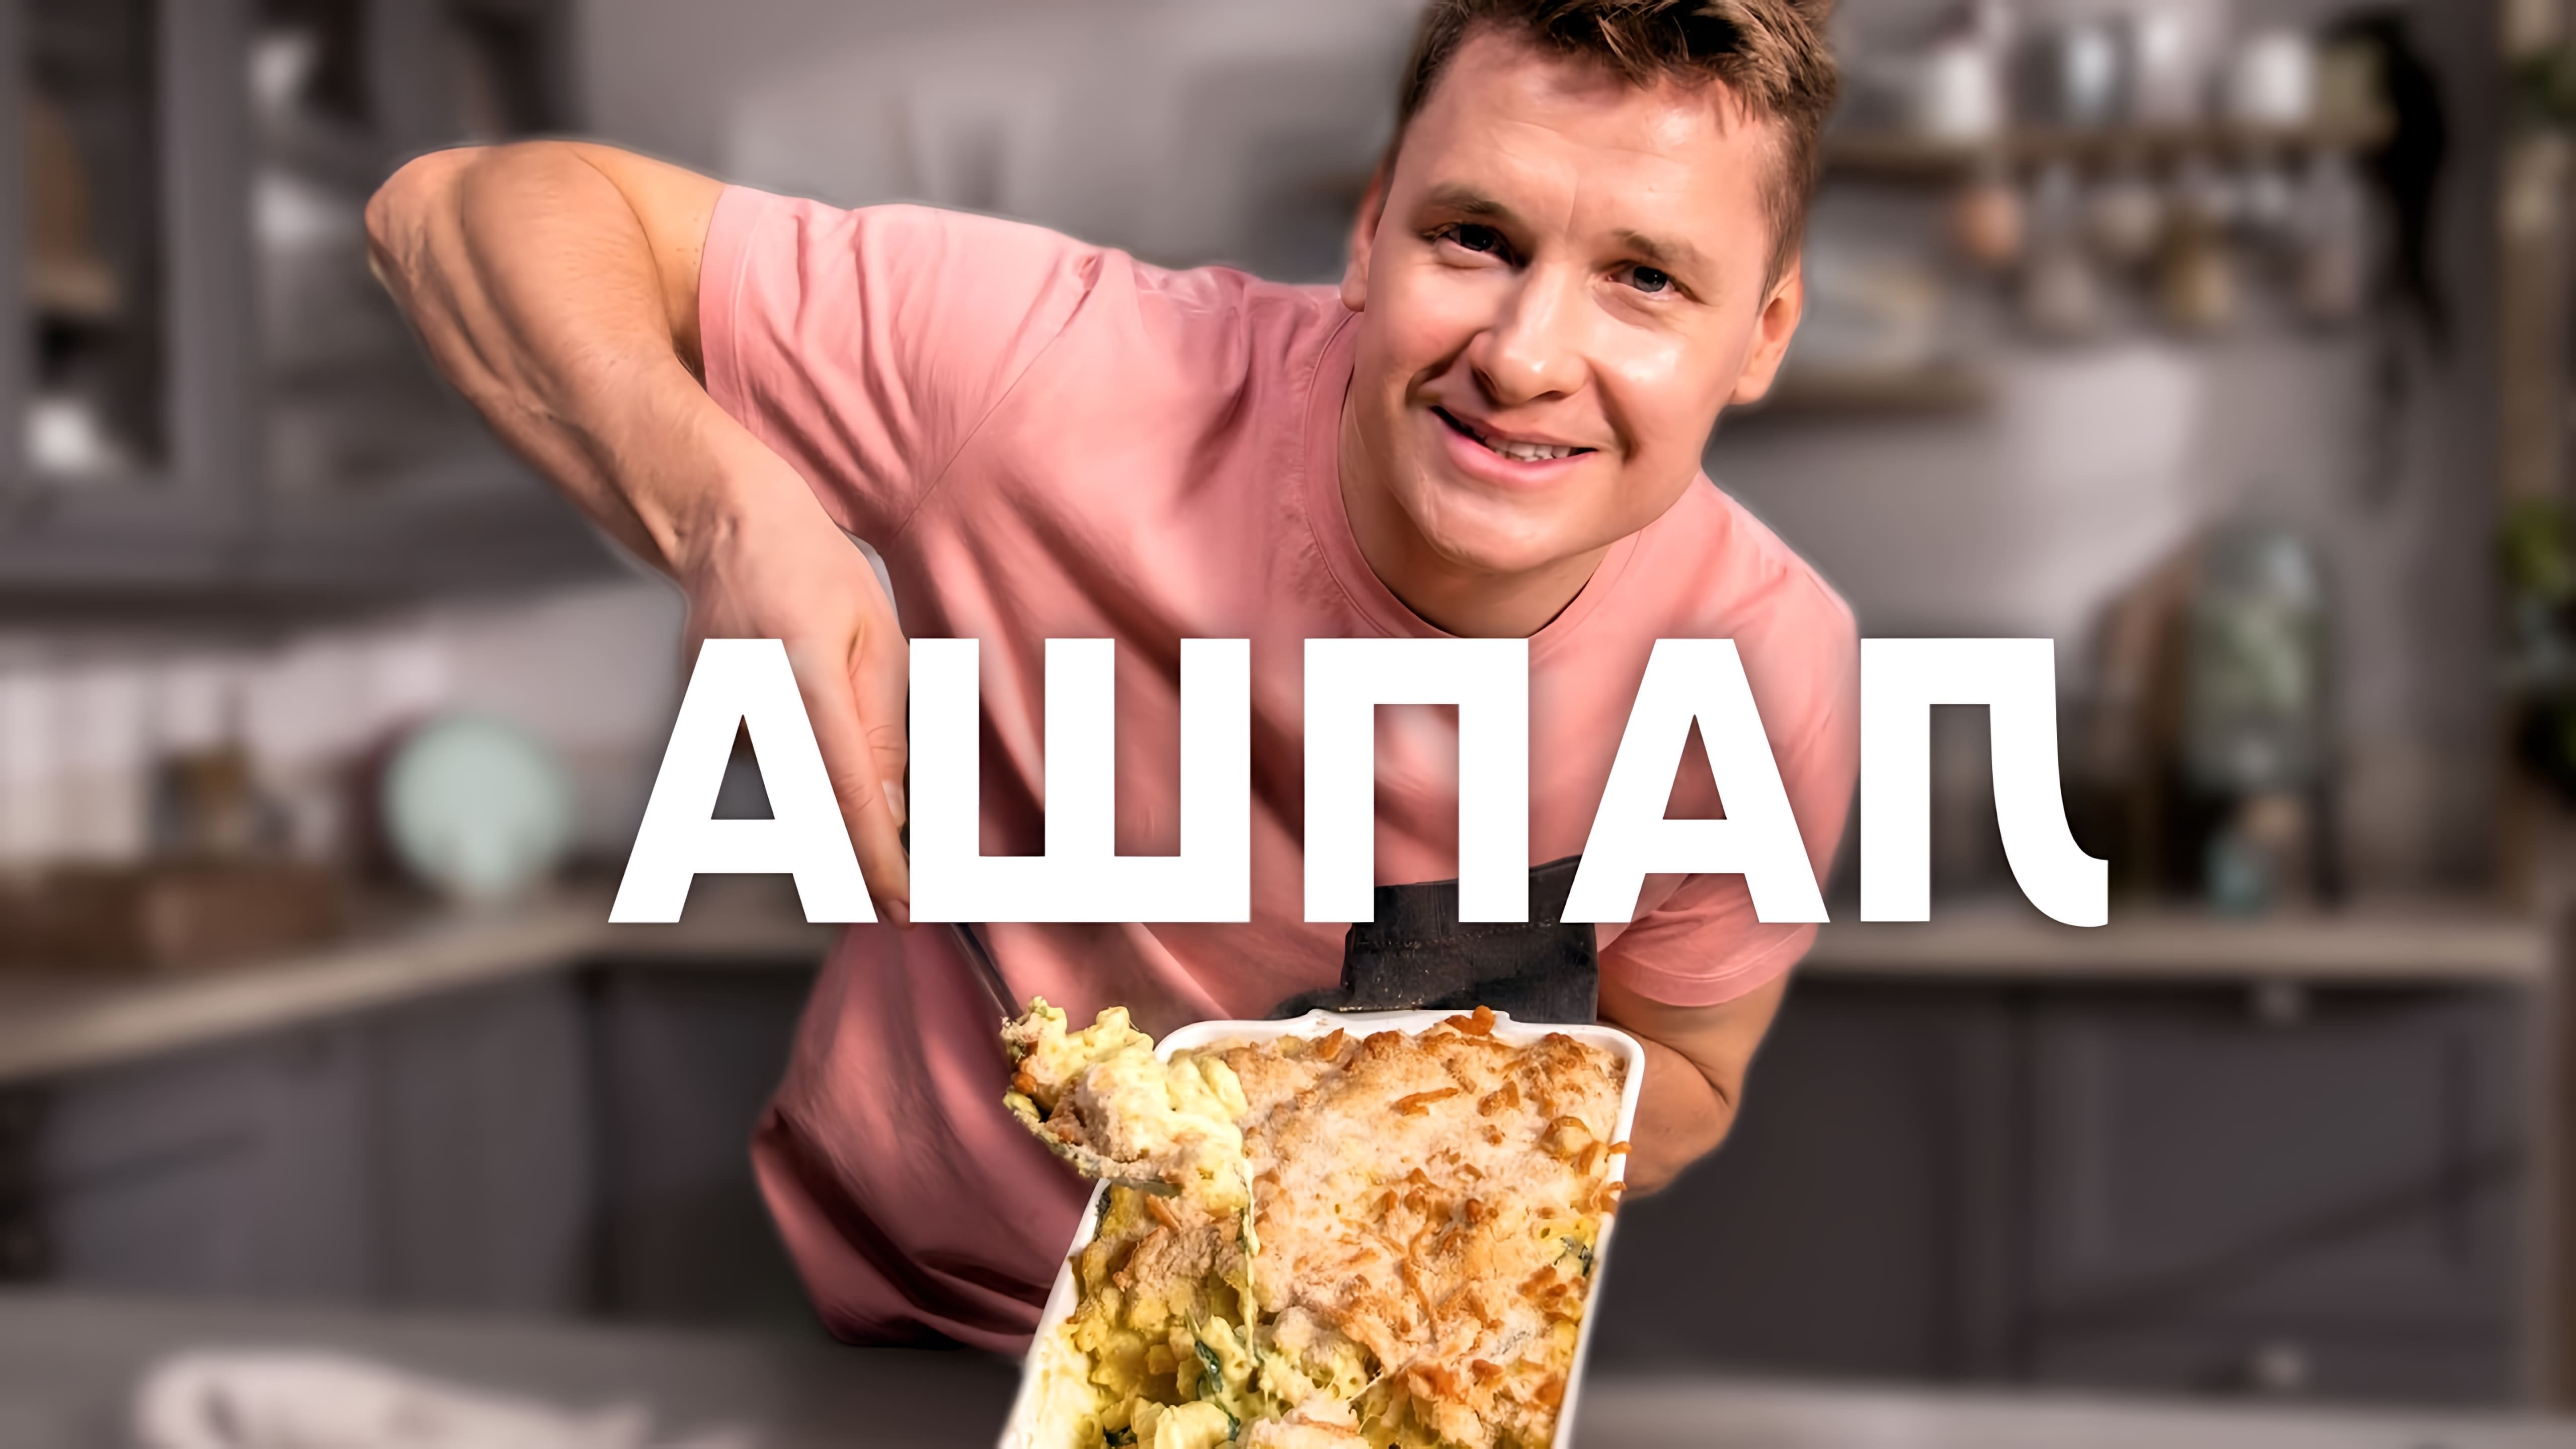 В этом видео шеф-повар Белькович показывает, как приготовить мак-энчиз - макароны с сыром